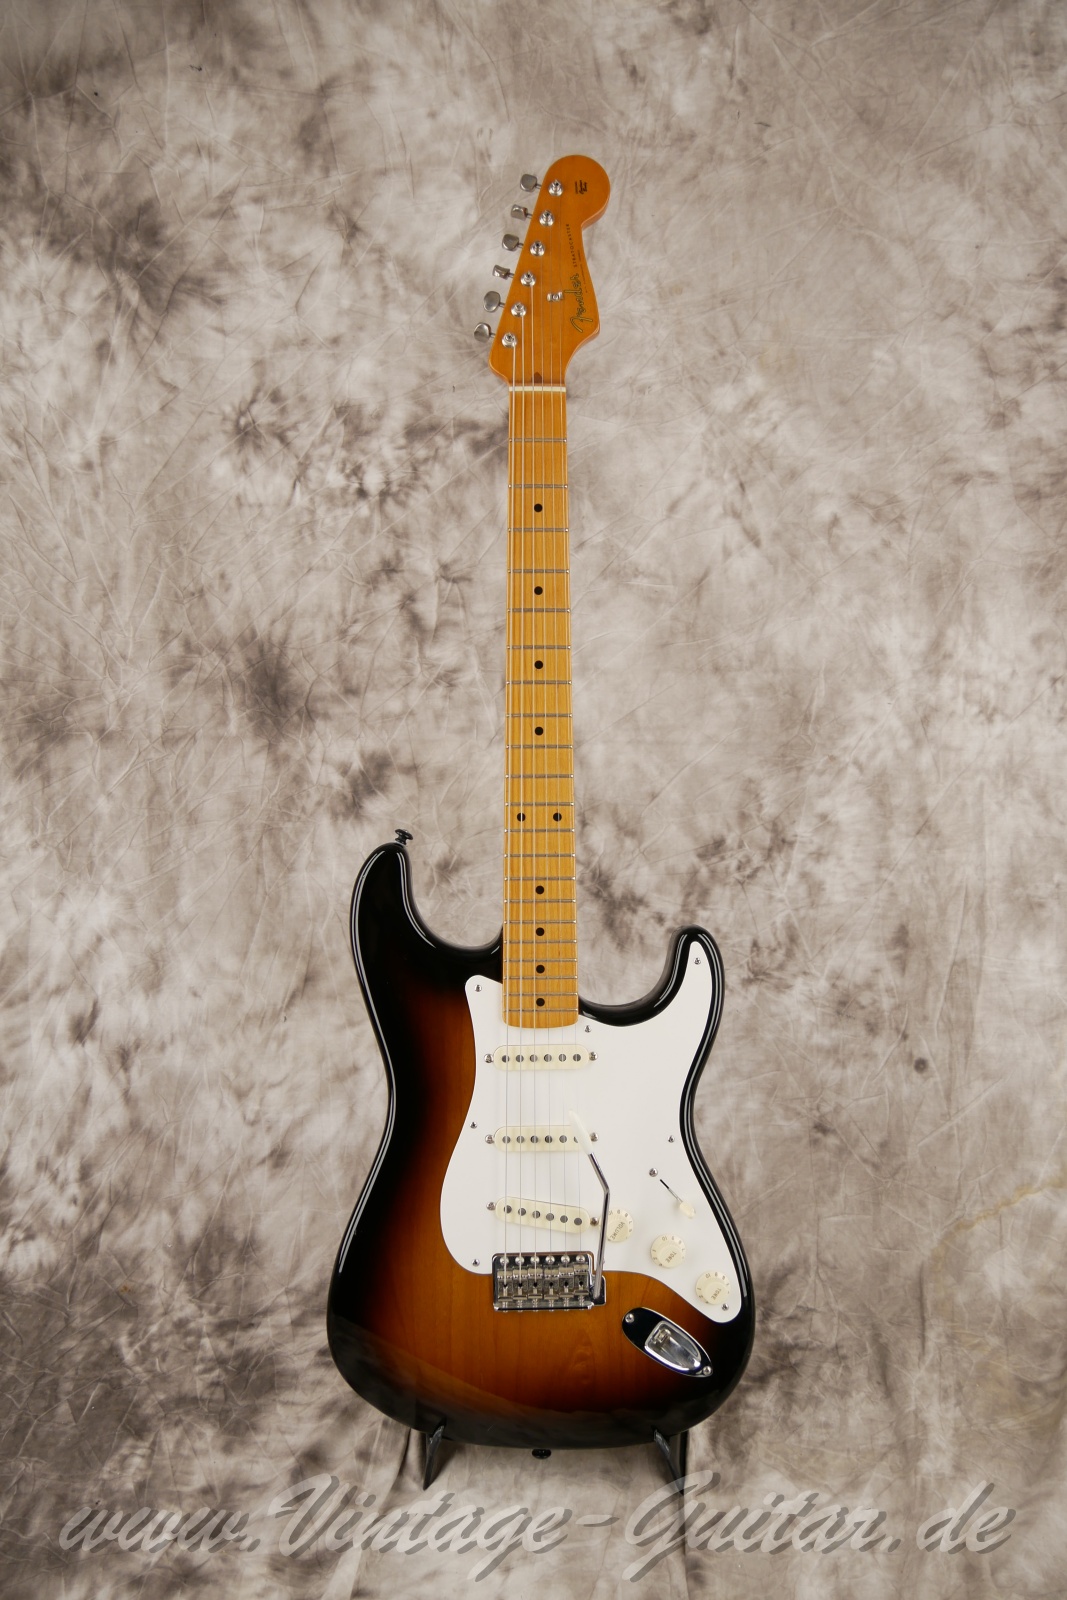 Fener-Stratocaster-Classic-player-series-50s-2007-sunburst-001.jpg